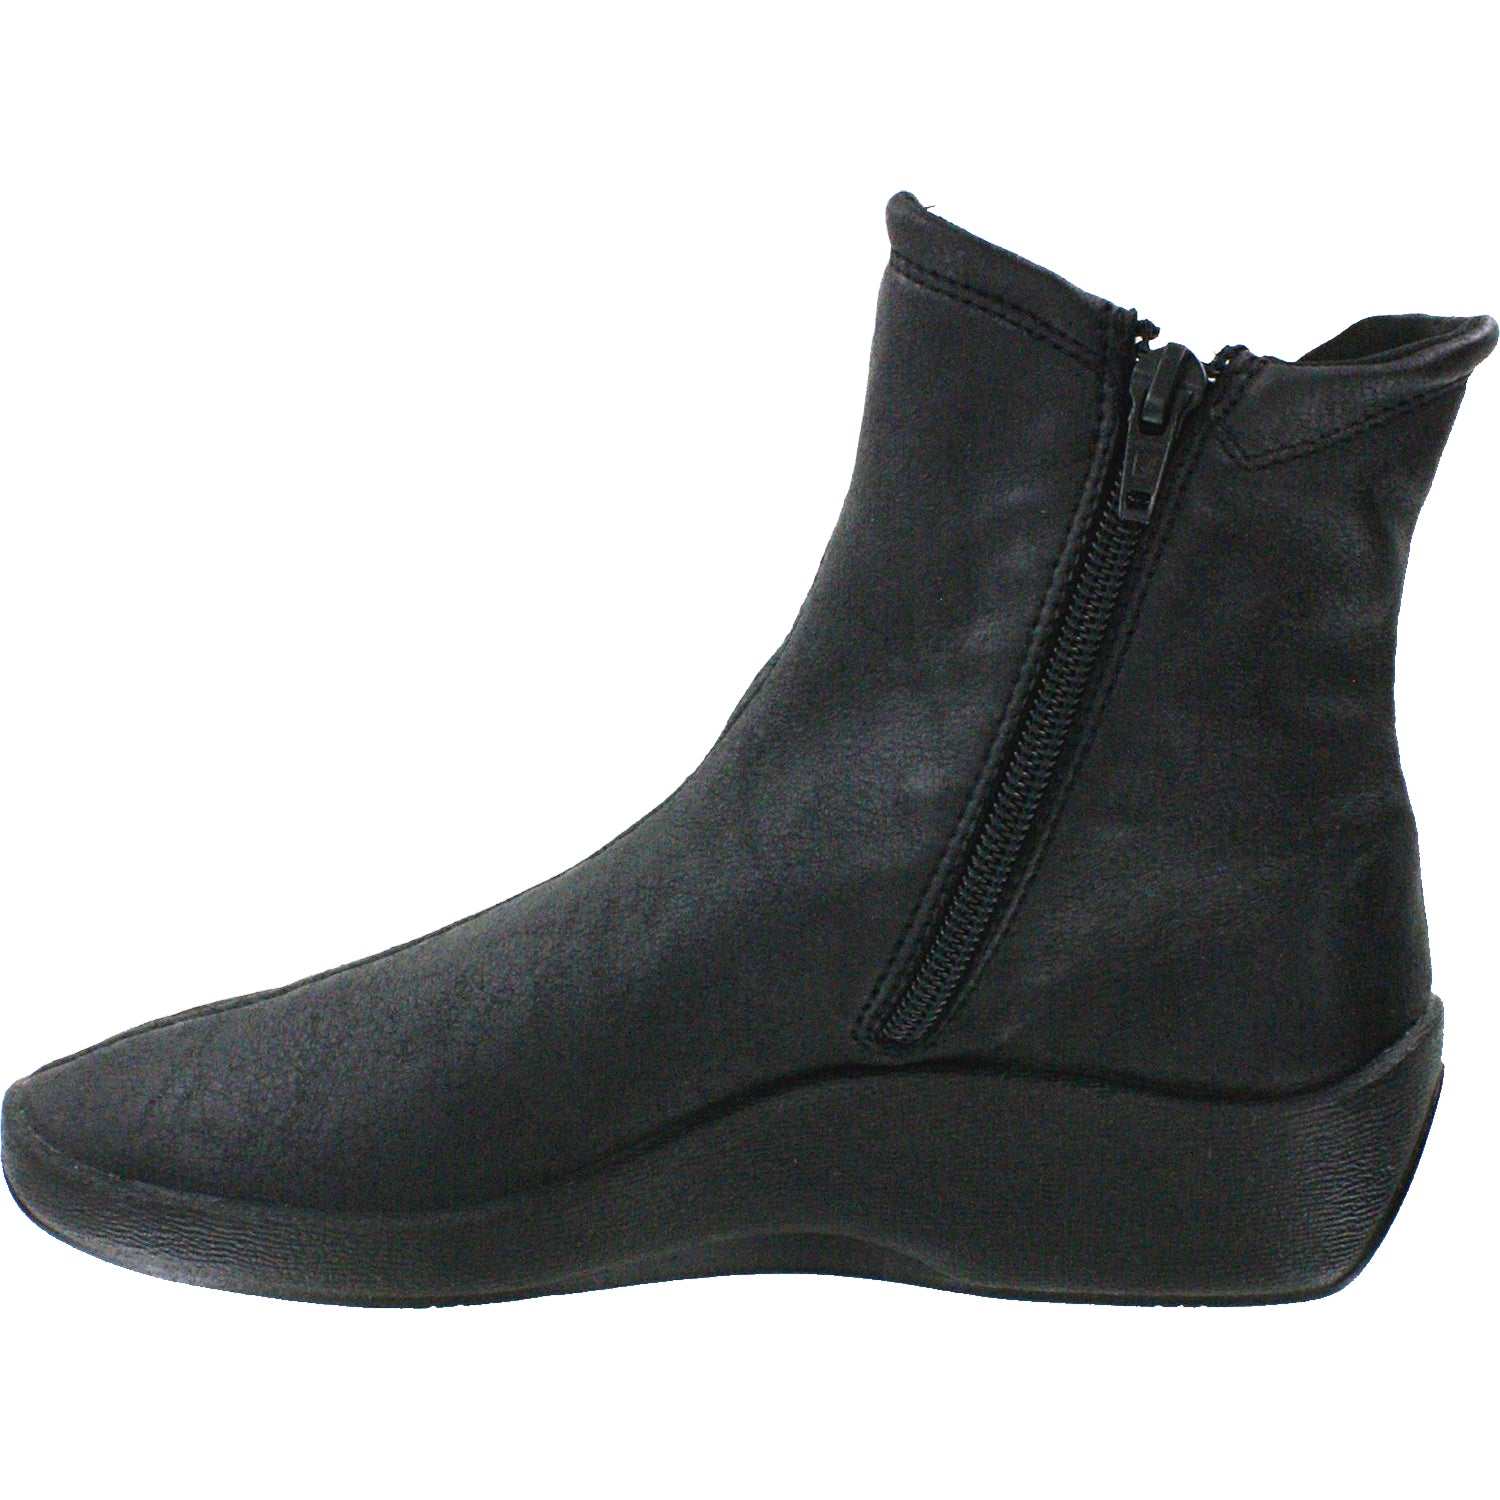 Arcopedico L19 | Arcopedico Women's Boots | Footwear etc.